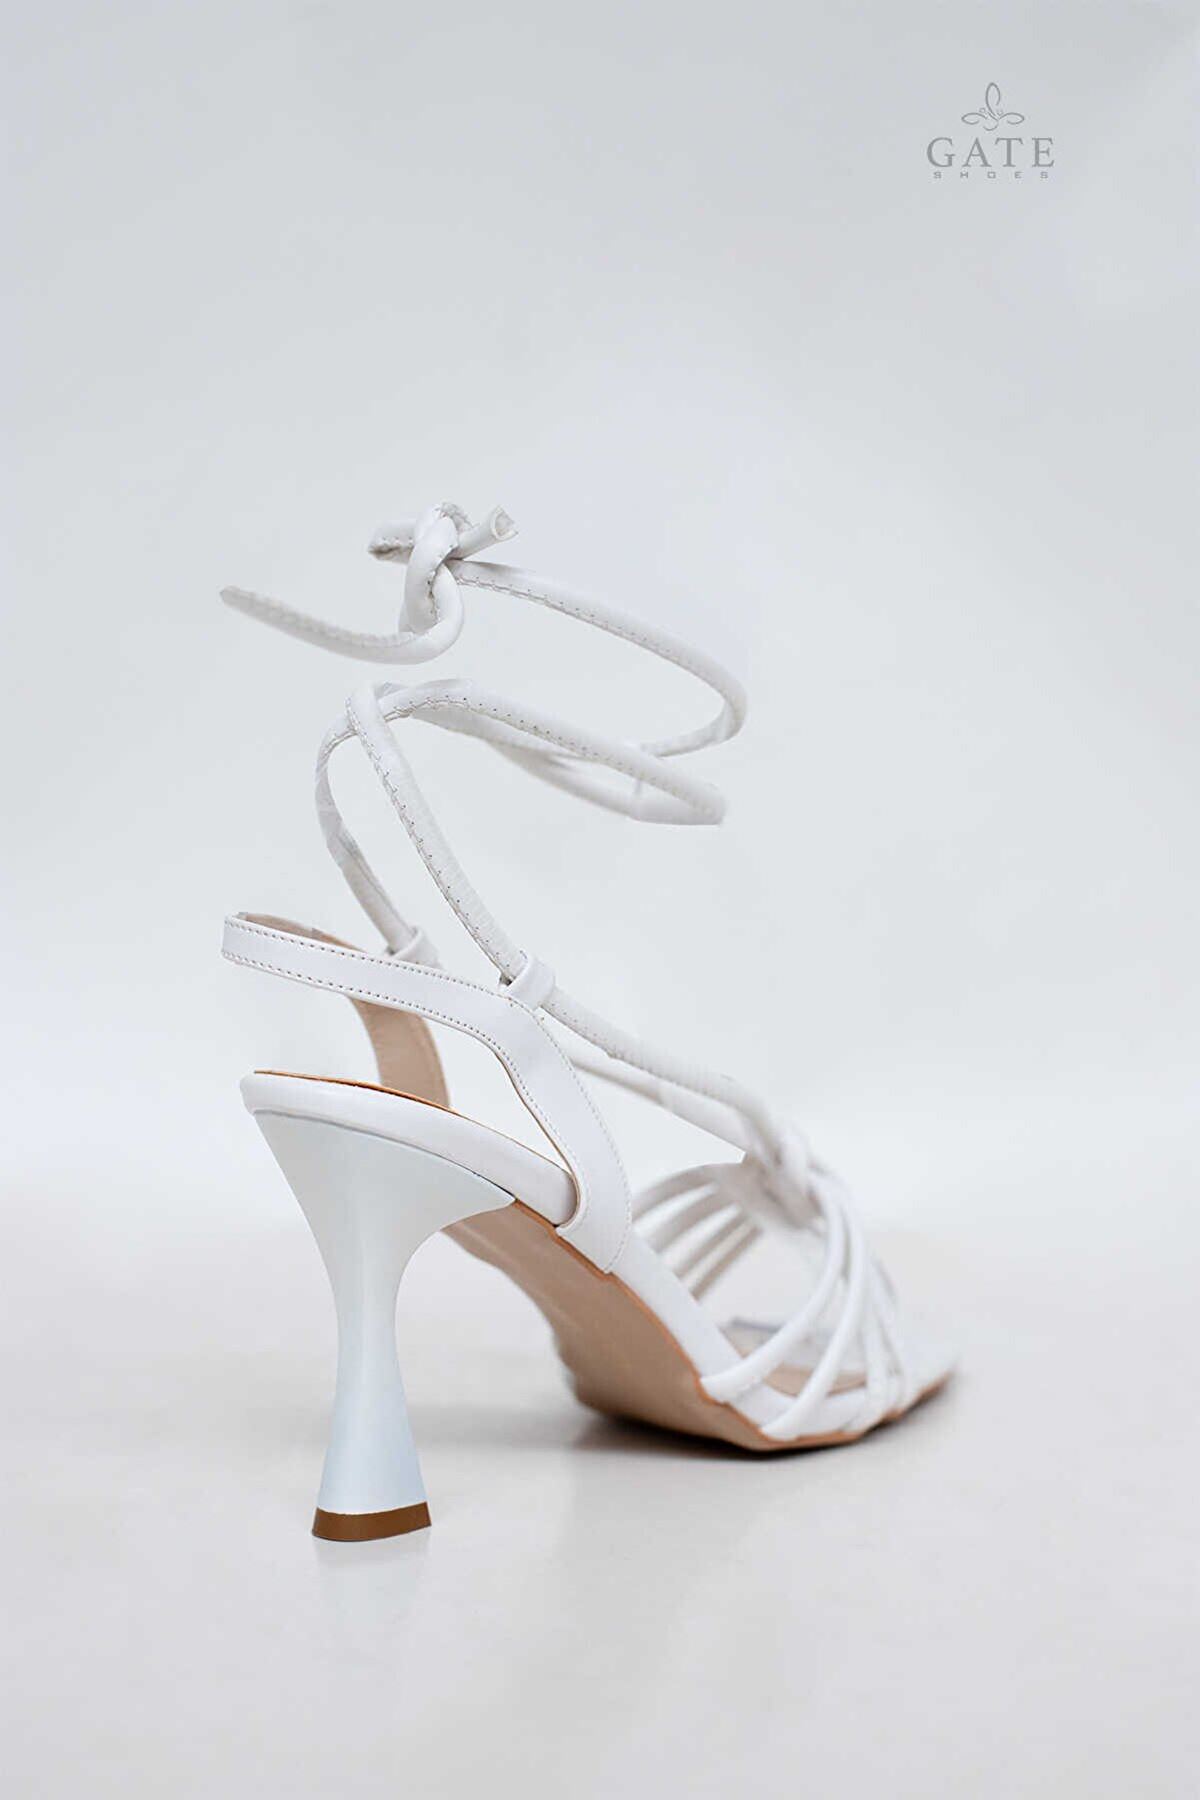 Kadın Bantlı Ve İpli Topuklu Ayakkabı Sandalet Linda Gate Shoes-Beyaz